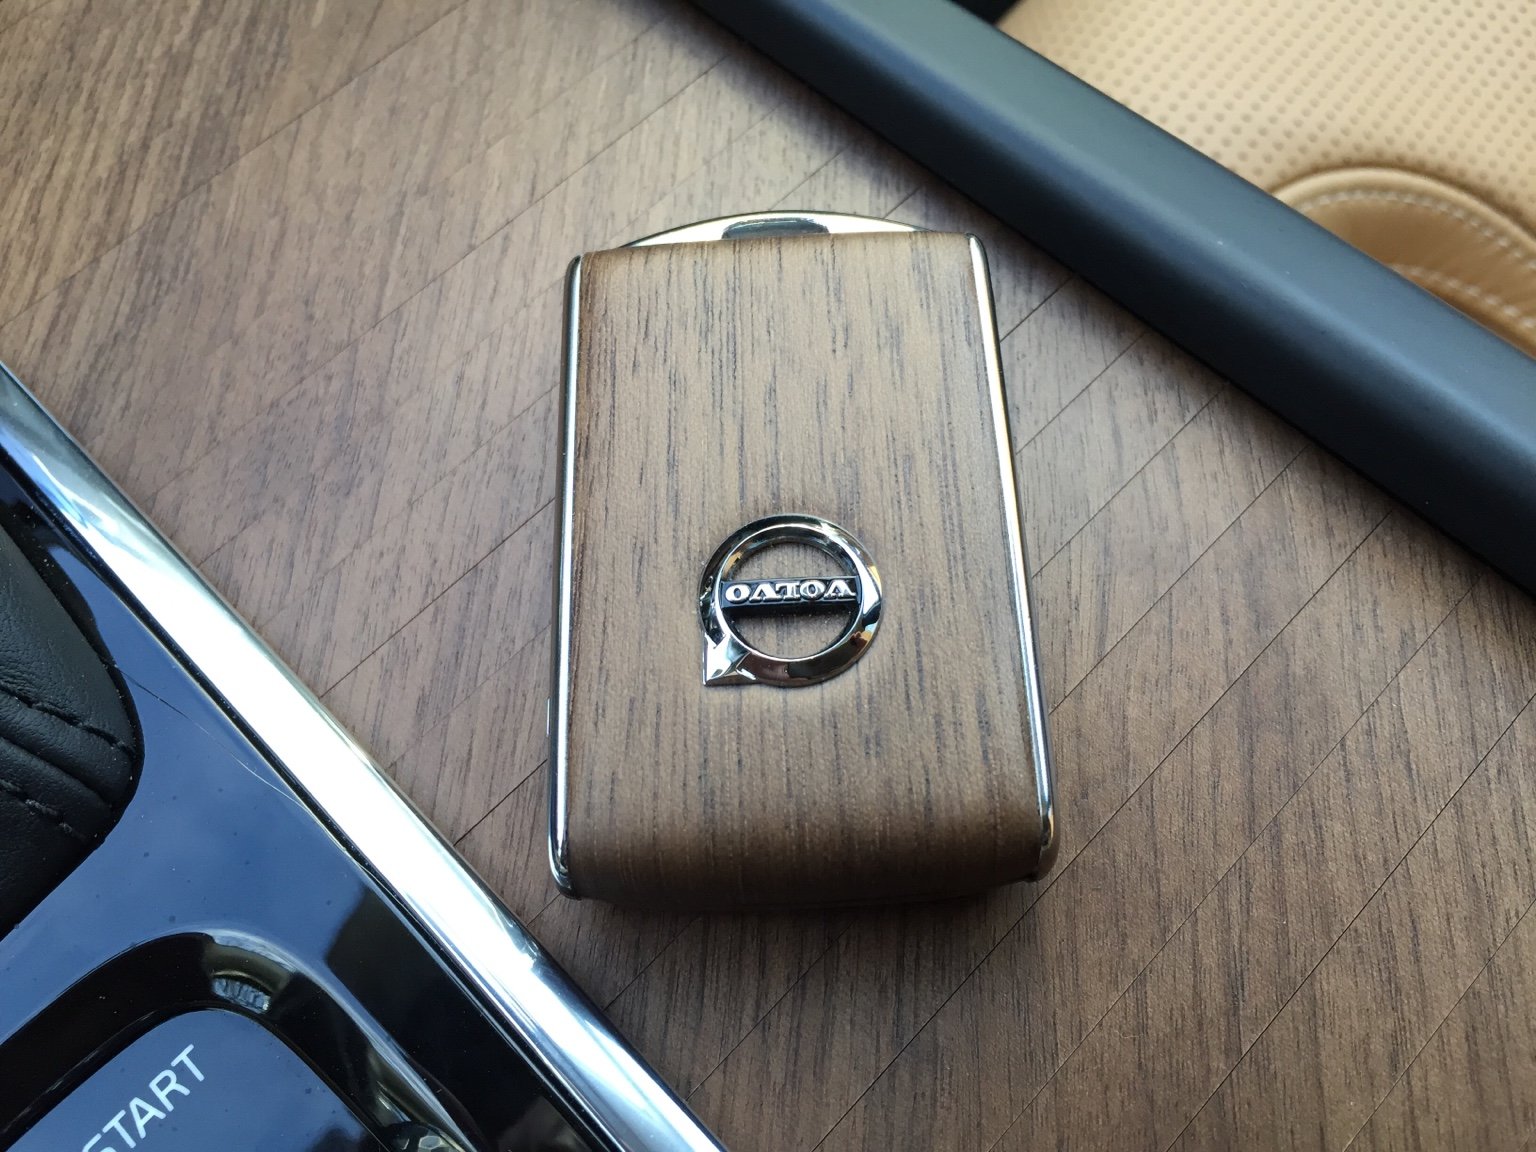 Hình 02- Ốp gỗ chìa khóa xe Volvo chính hãng